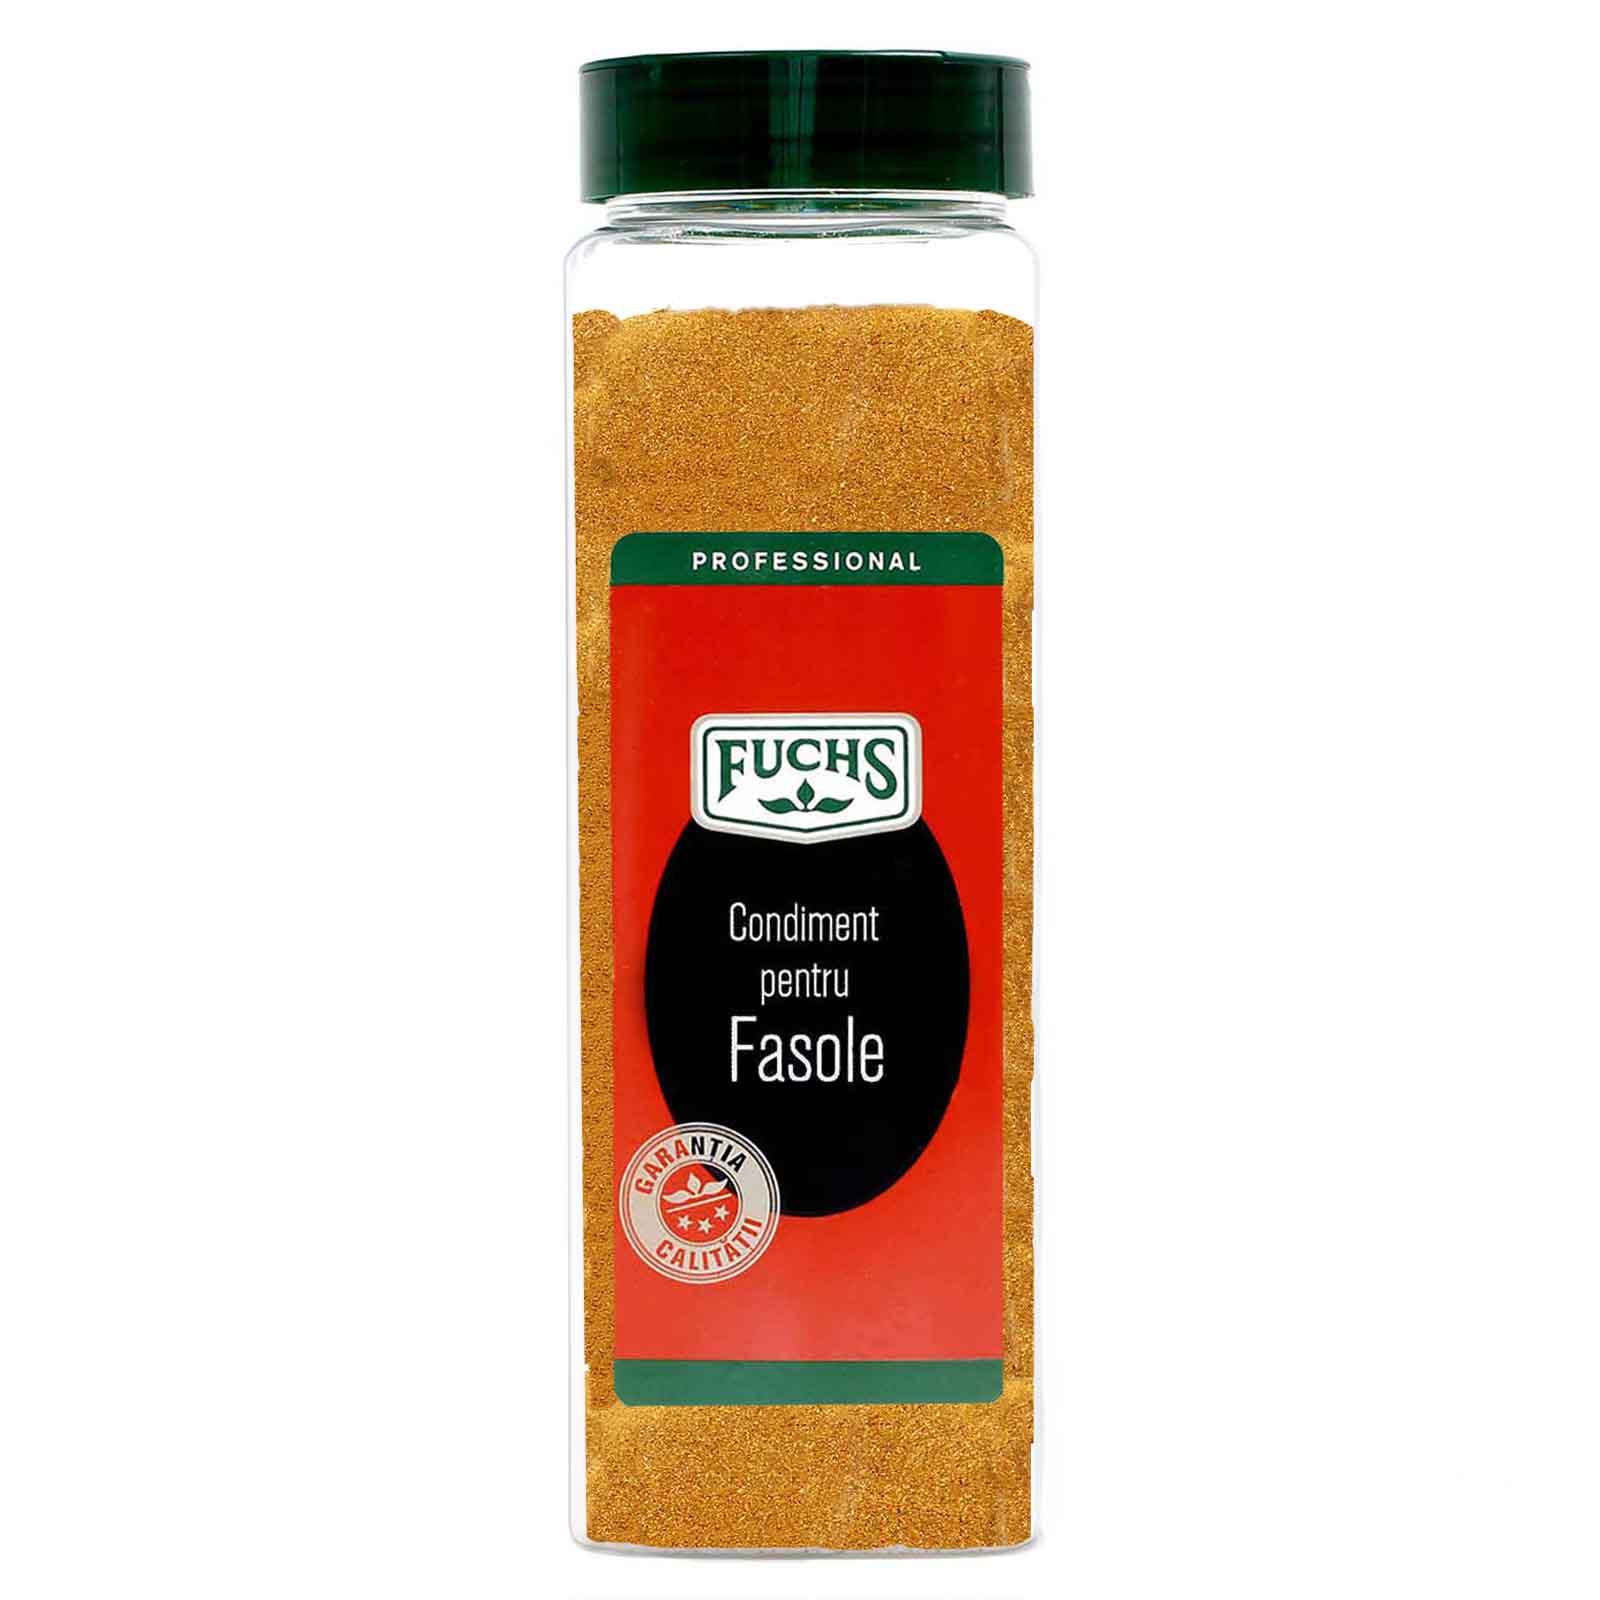 Condiment fasole, Fuchs, 550g